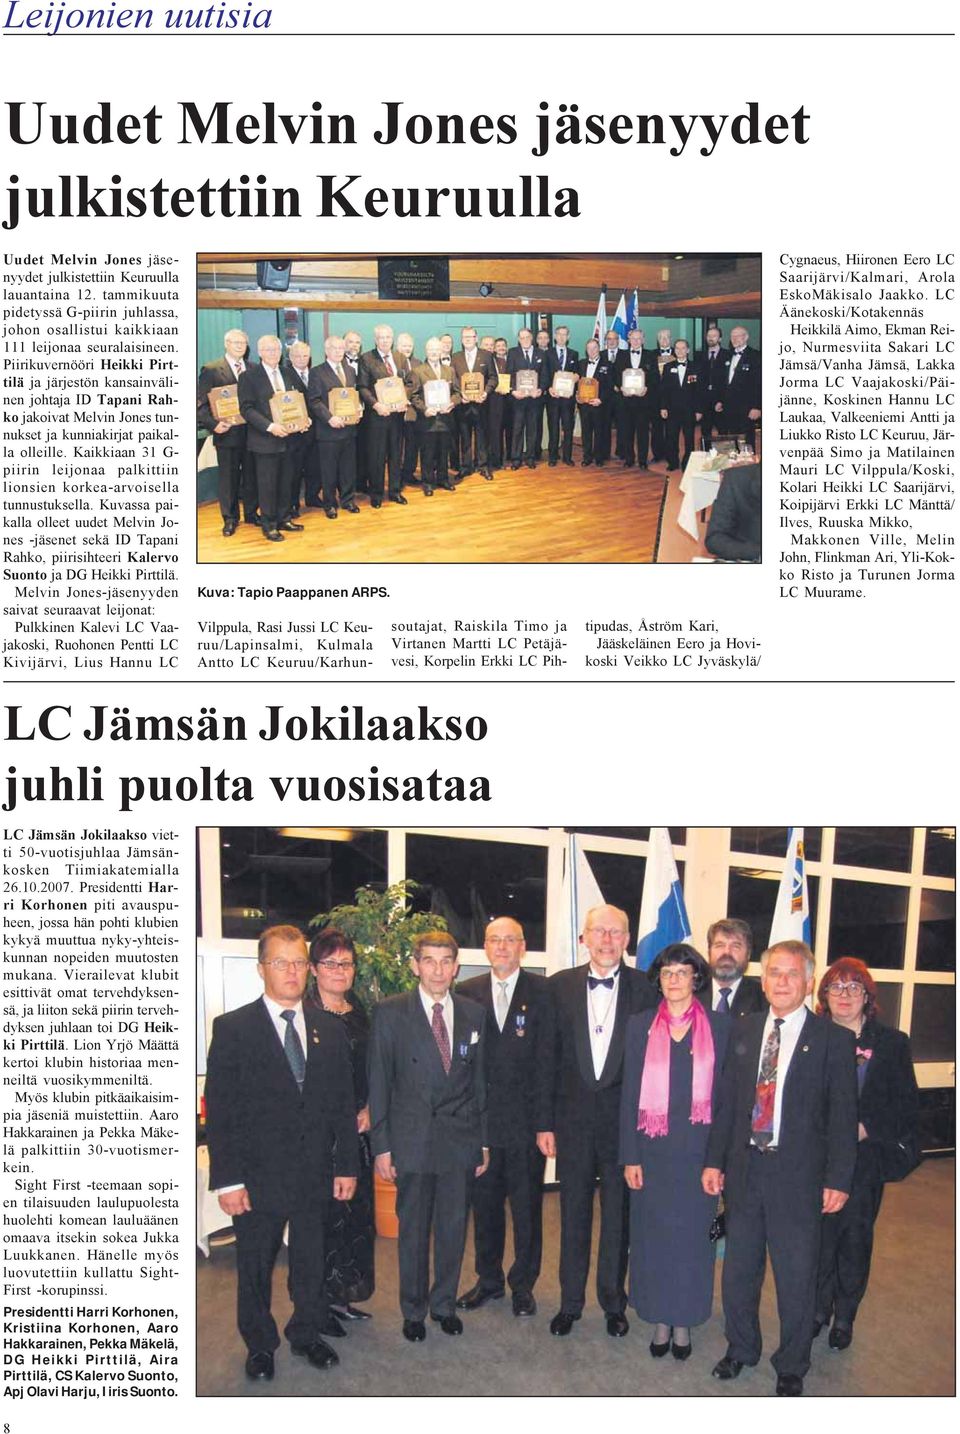 Piirikuvernööri Heikki Pirttilä ja järjestön kansainvälinen johtaja ID Tapani Rahko jakoivat Melvin Jones tunnukset ja kunniakirjat paikalla olleille.